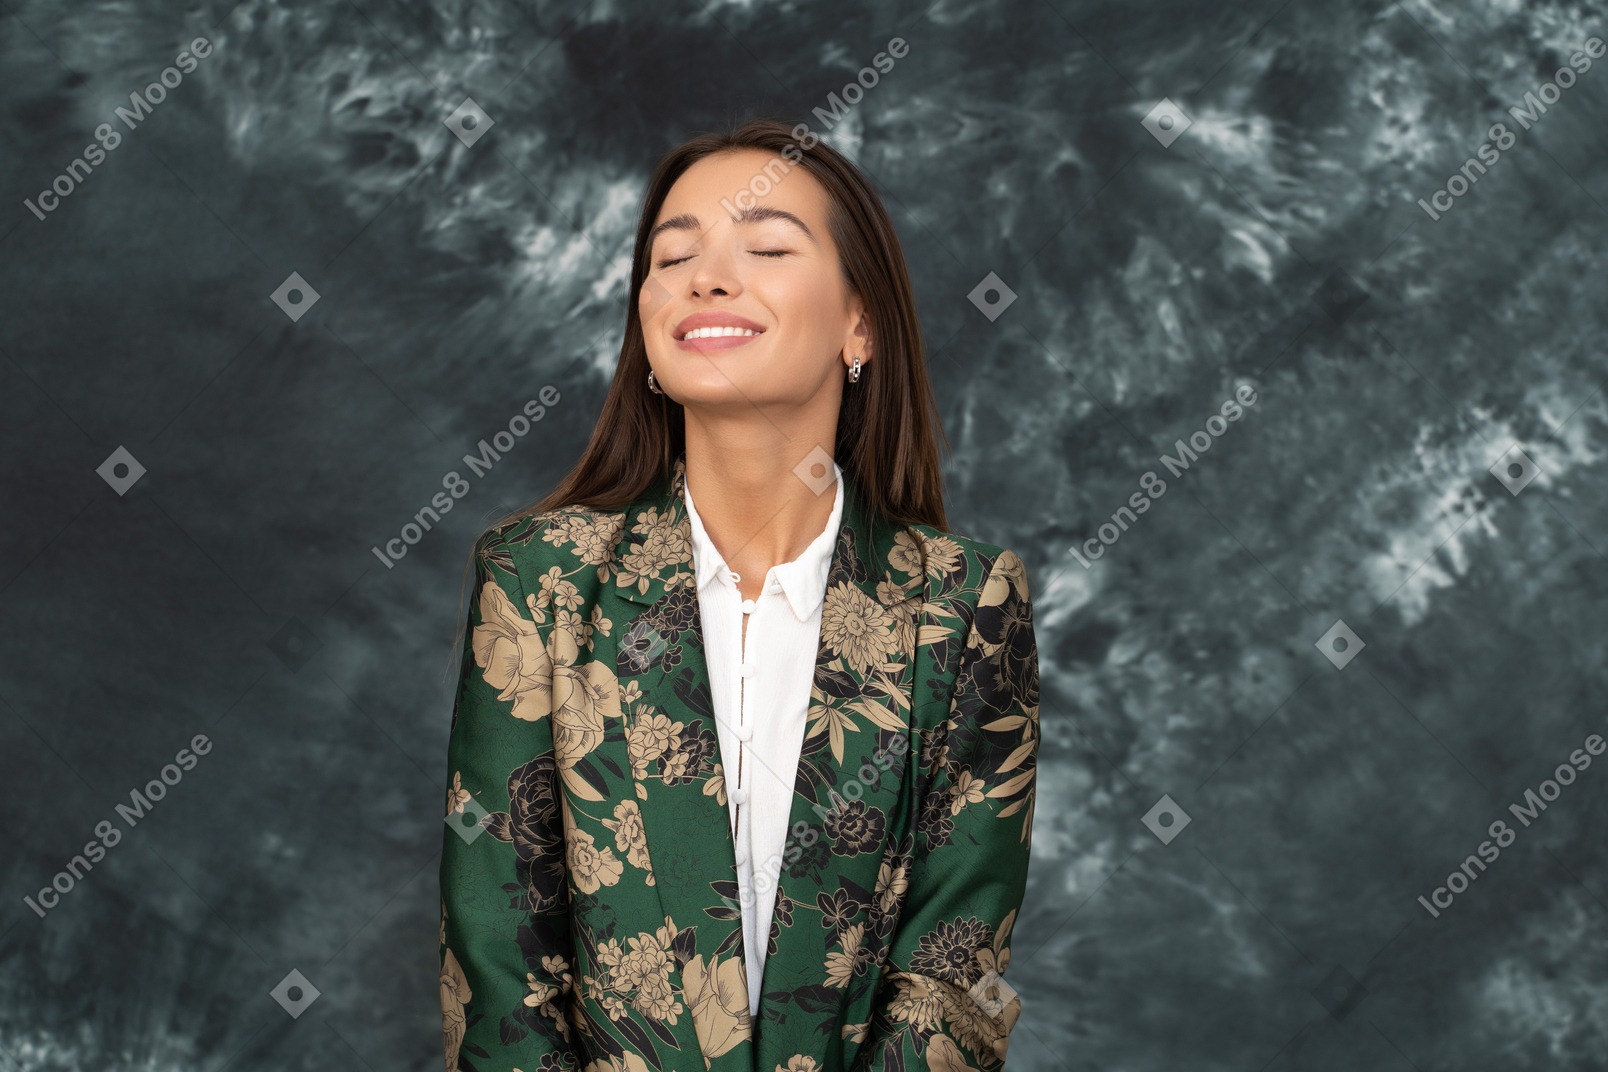 녹색 일본 재킷을 입은 여자가 눈을 감고 넓게 웃고있다.